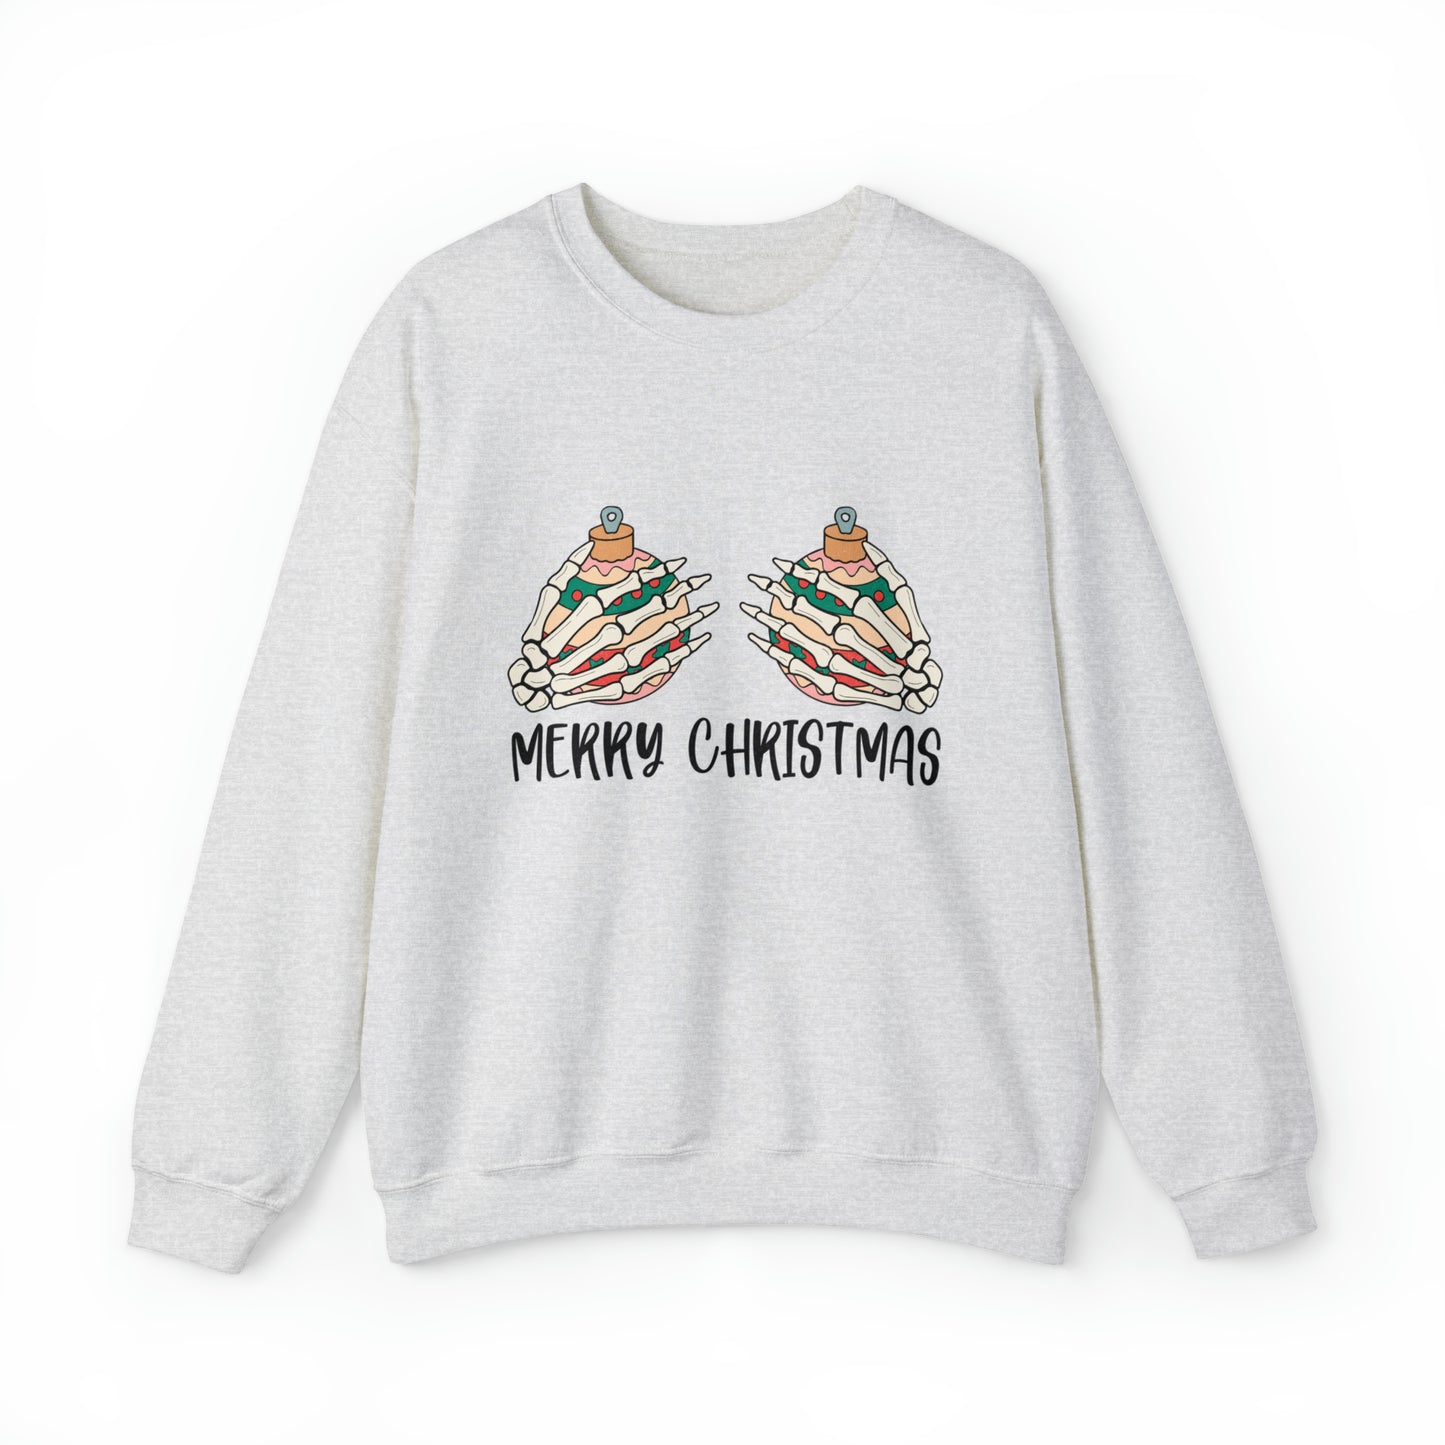 Funny Women's Merry Christmas Sweatshirt